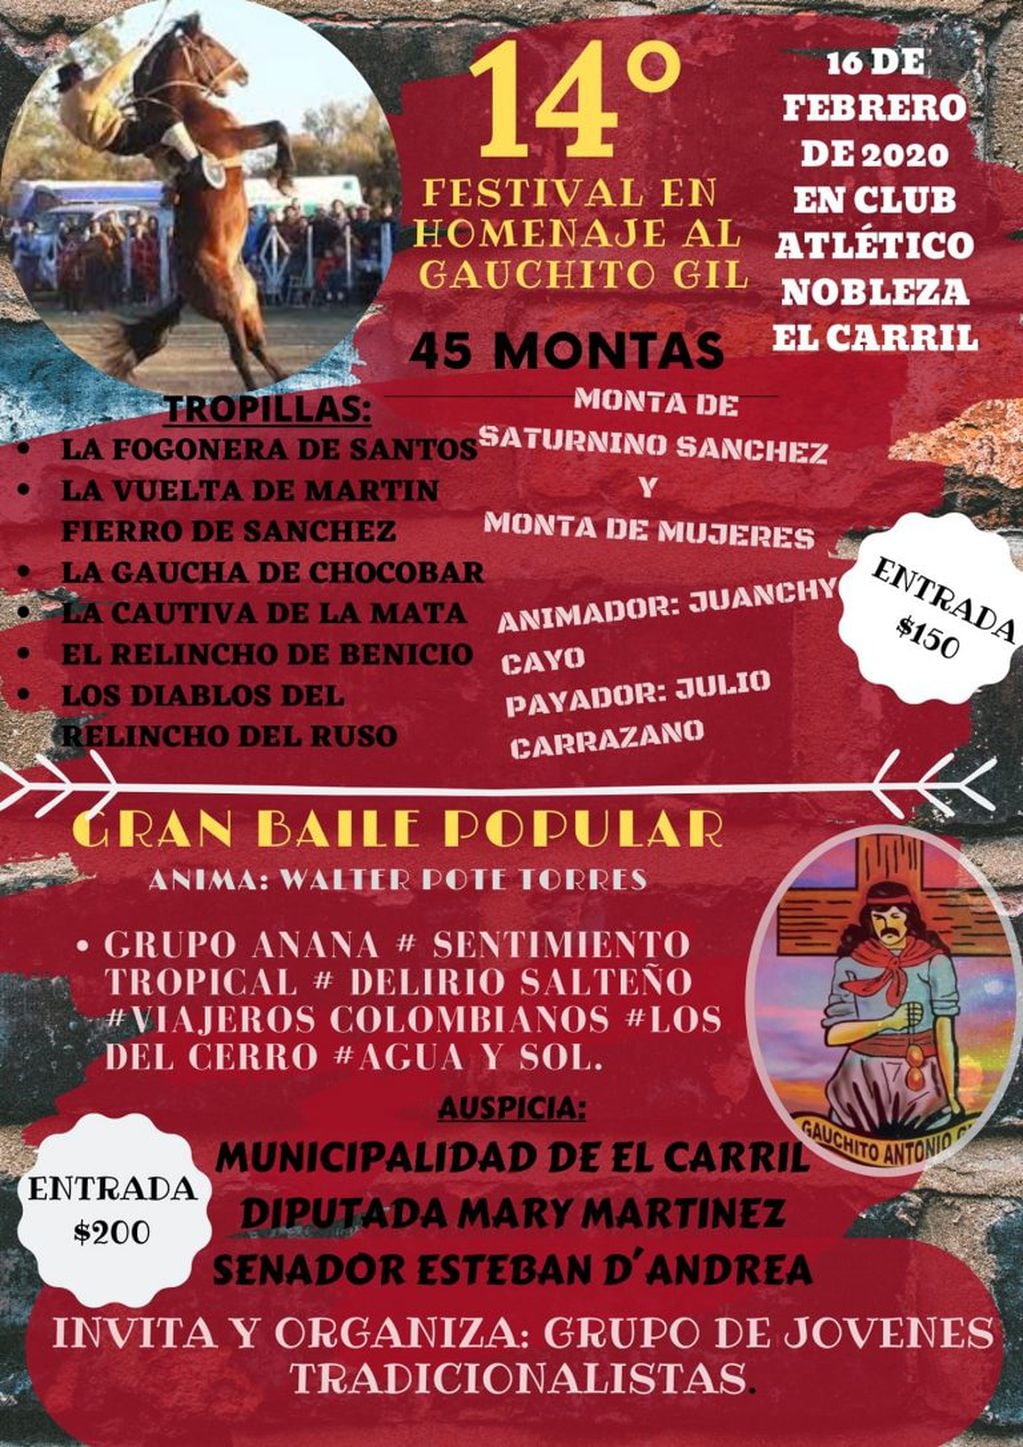 Festival en Homenaje al Gauchito Gil en El Carril (Facebook Devotos del Gauchito Gil)